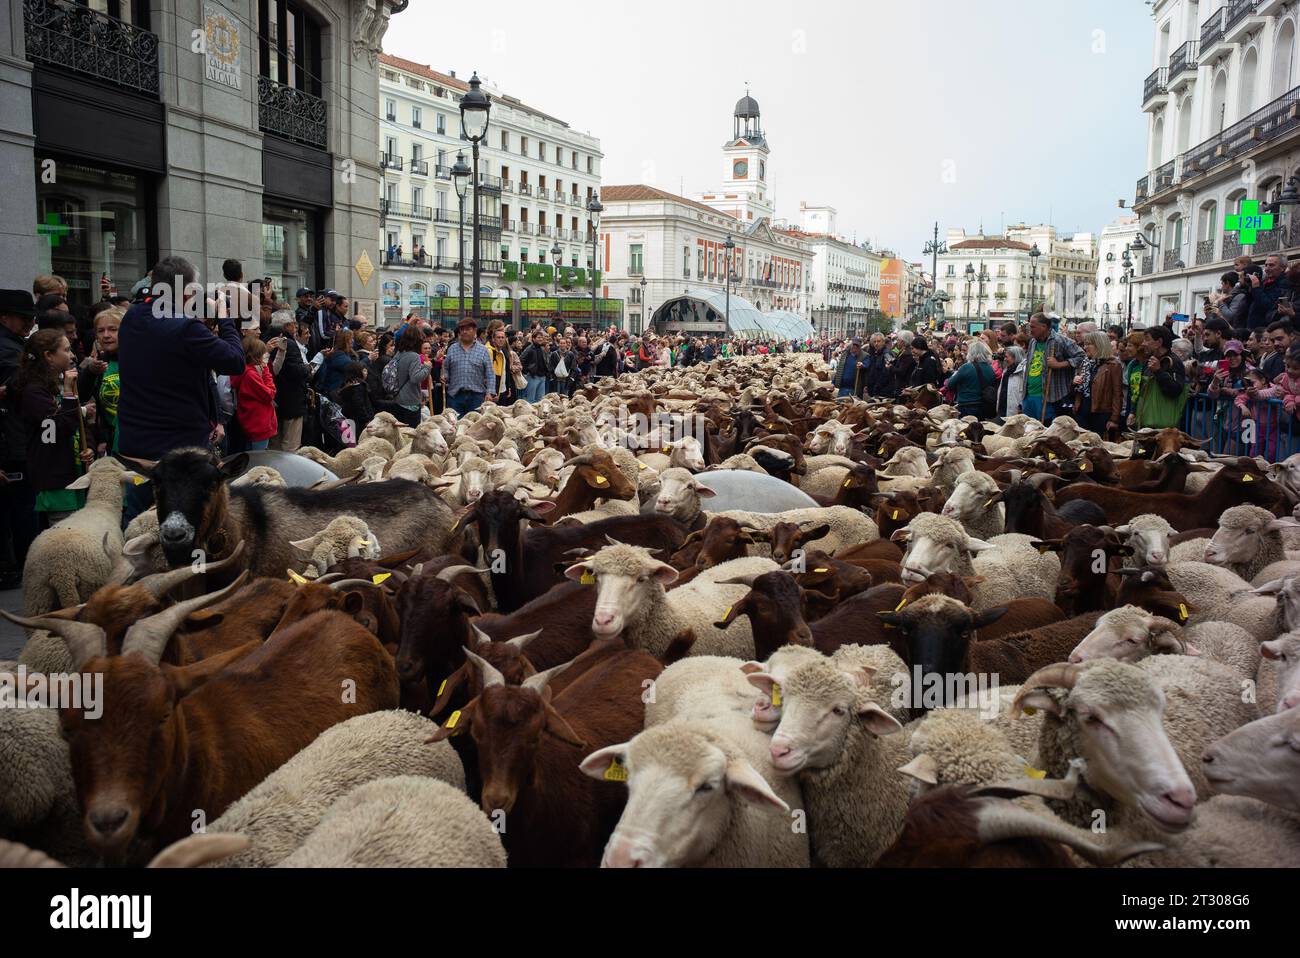 Le troupeau de moutons et de chèvres, accompagné de bergers, traverse les rues du centre de Madrid pendant la transhumance, célébrée chaque année. Octobre 2 Banque D'Images